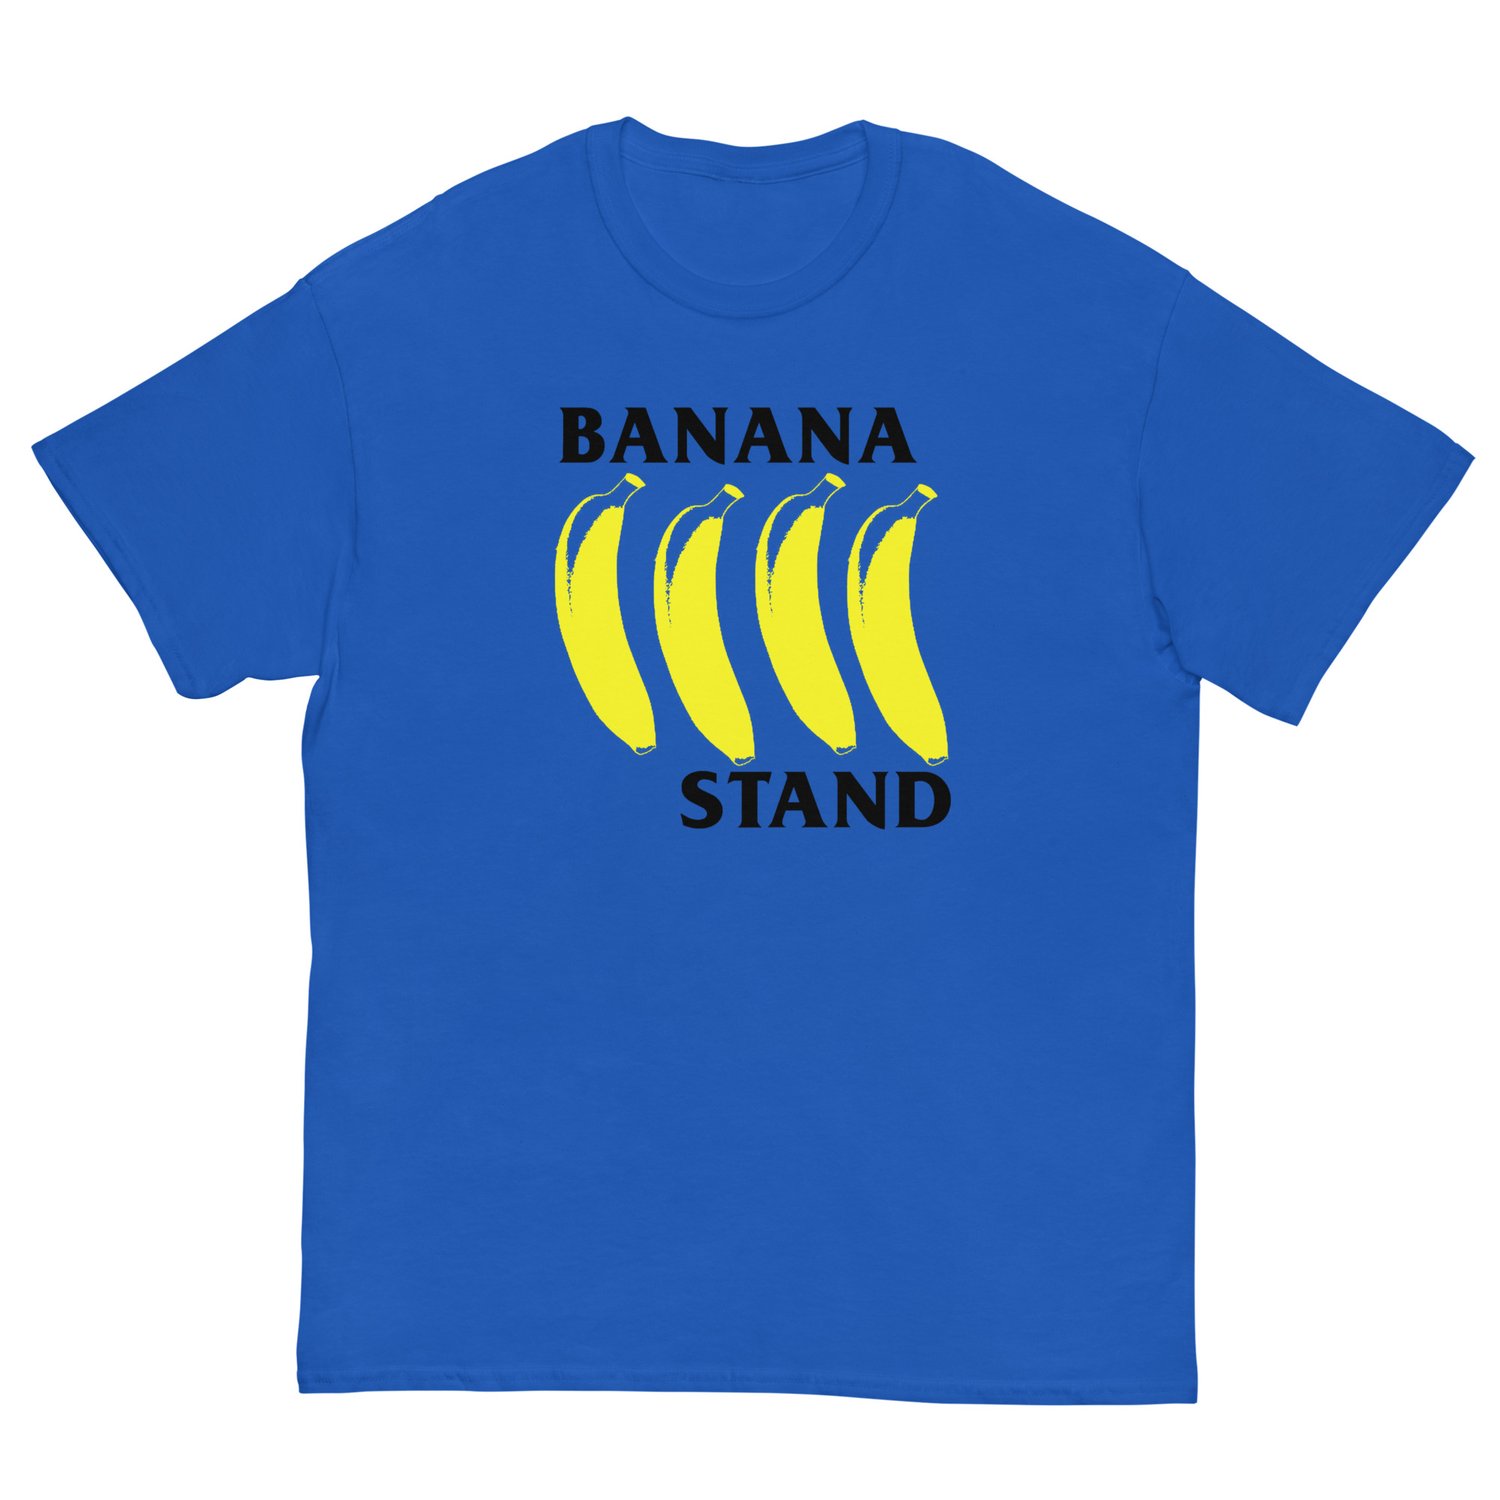 Image of Banana Stand tee